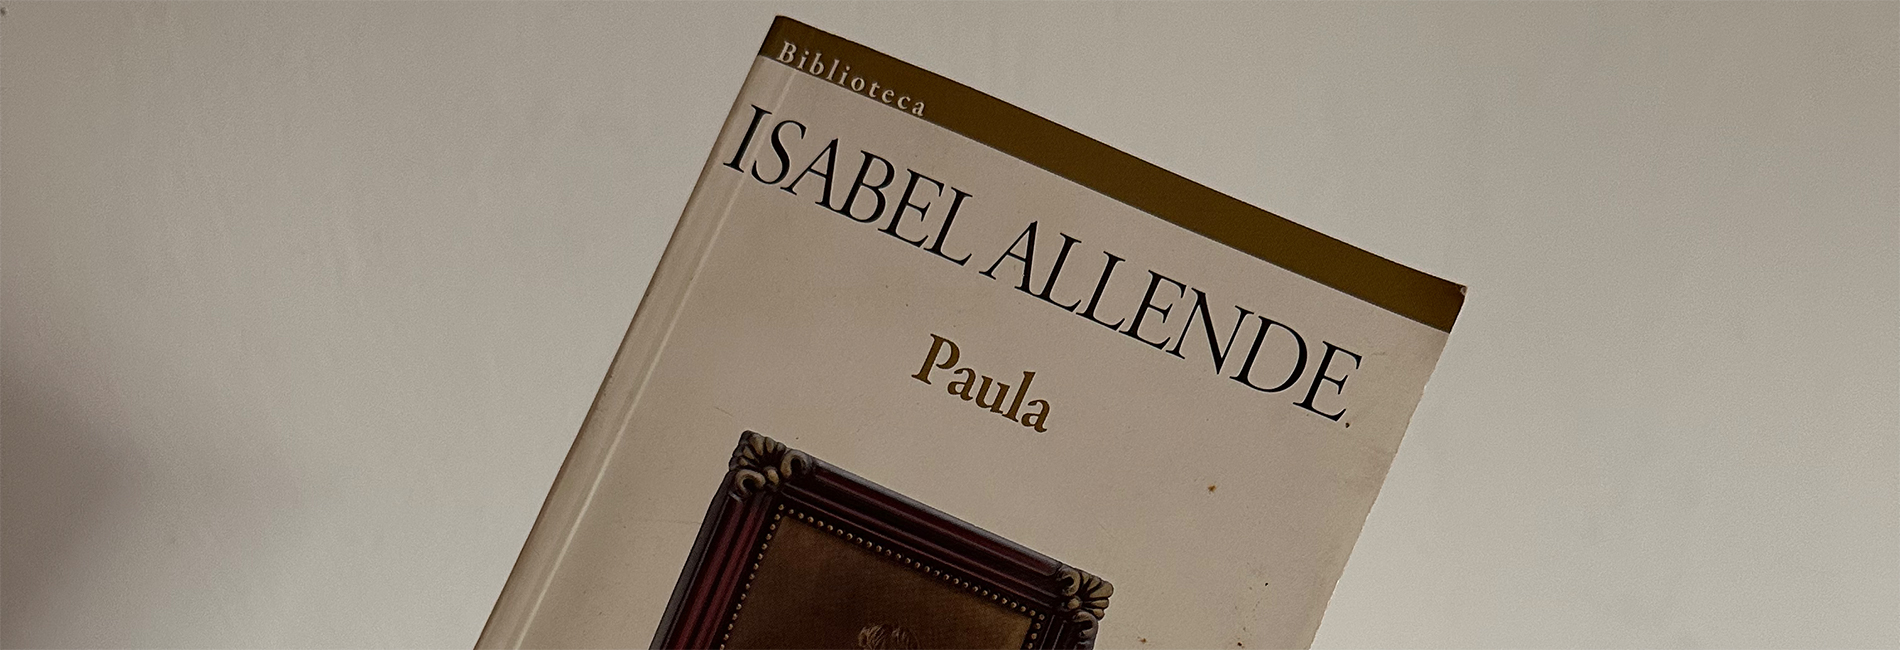 Paula de Isabel Allende o cómo transitar un duelo